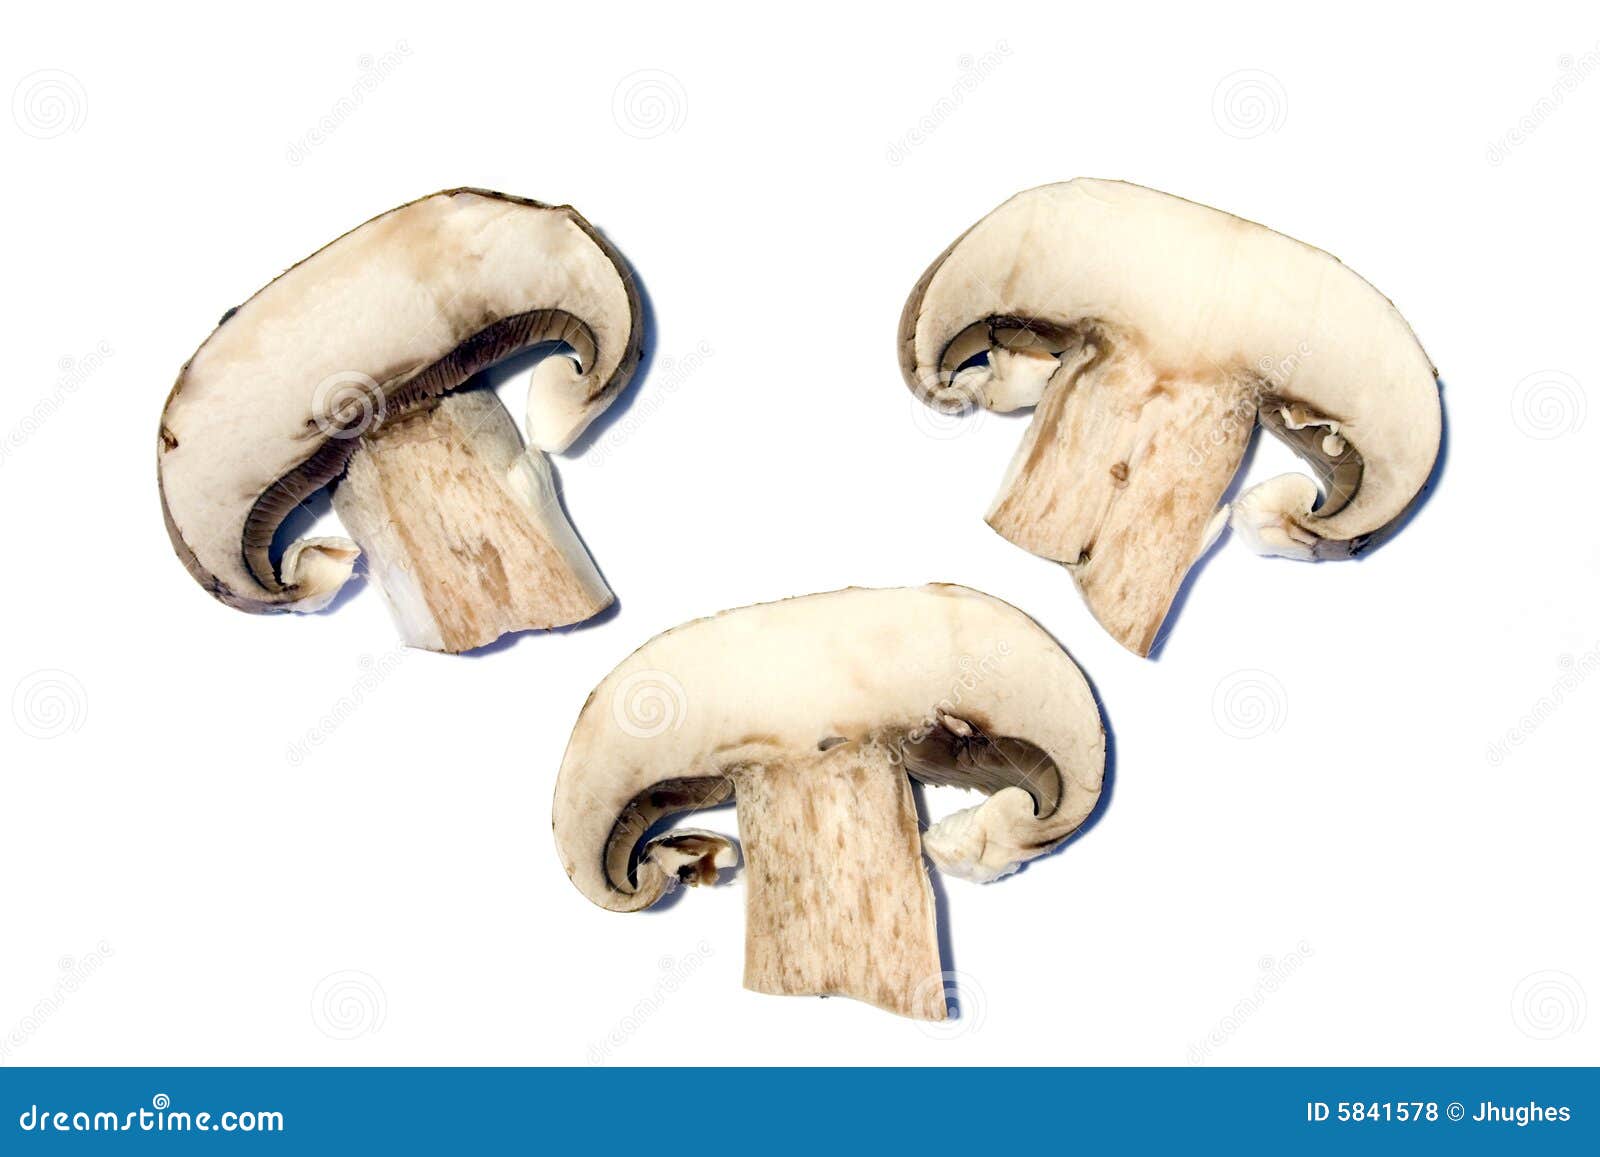 sliced mushroom clip art - photo #25